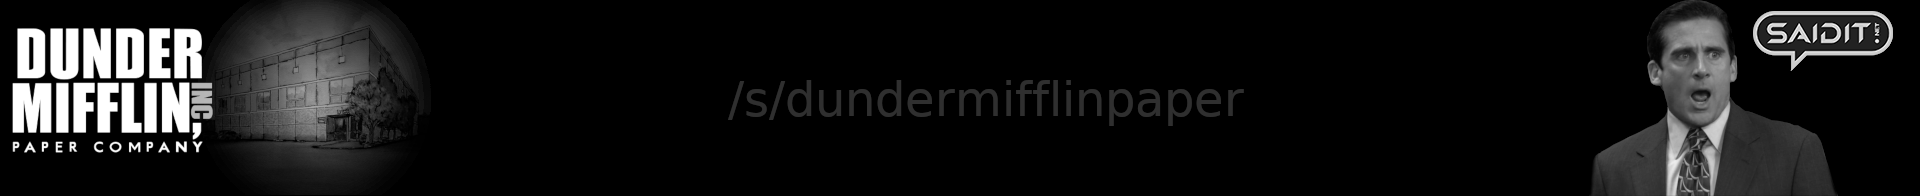 dundermifflinpaper